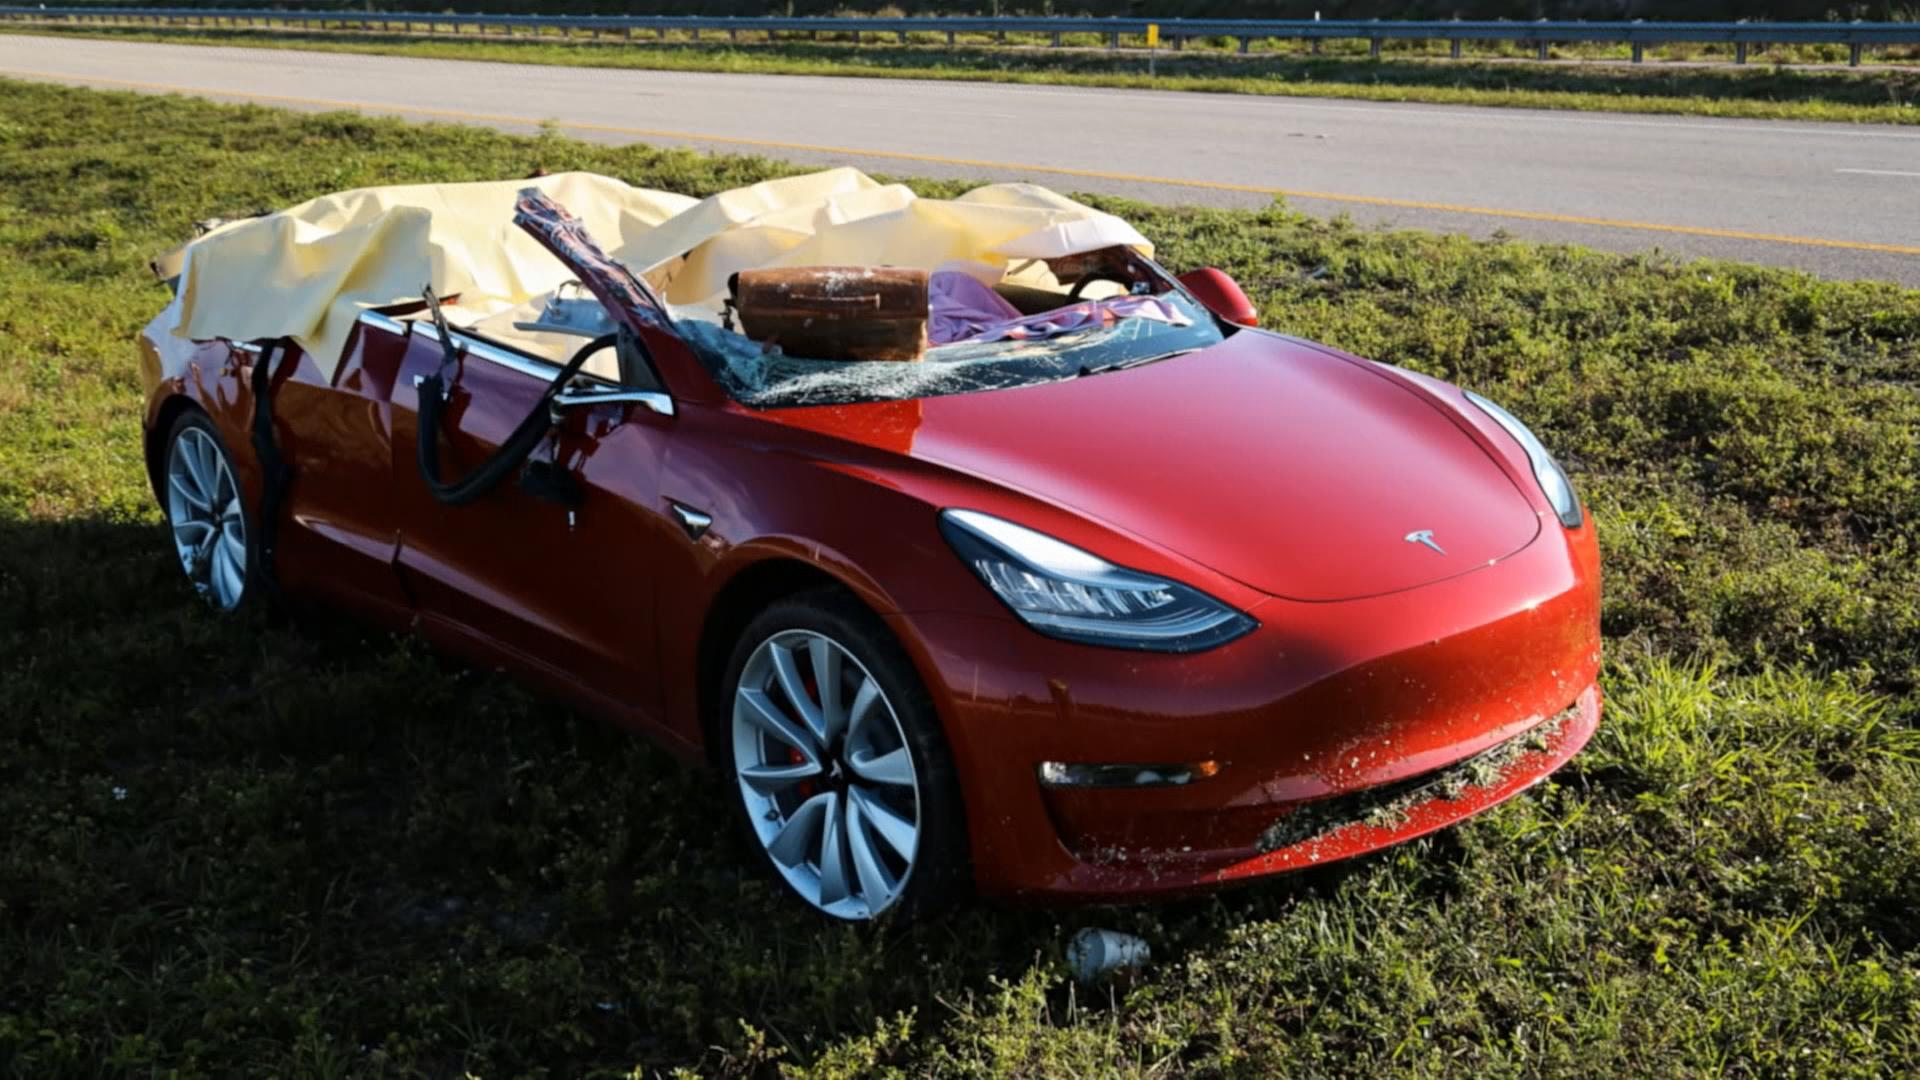 Zerstörtes Tesla-Fahrzeug nach Unfall auf Landstraße, Wagendach nicht mehr vorhanden